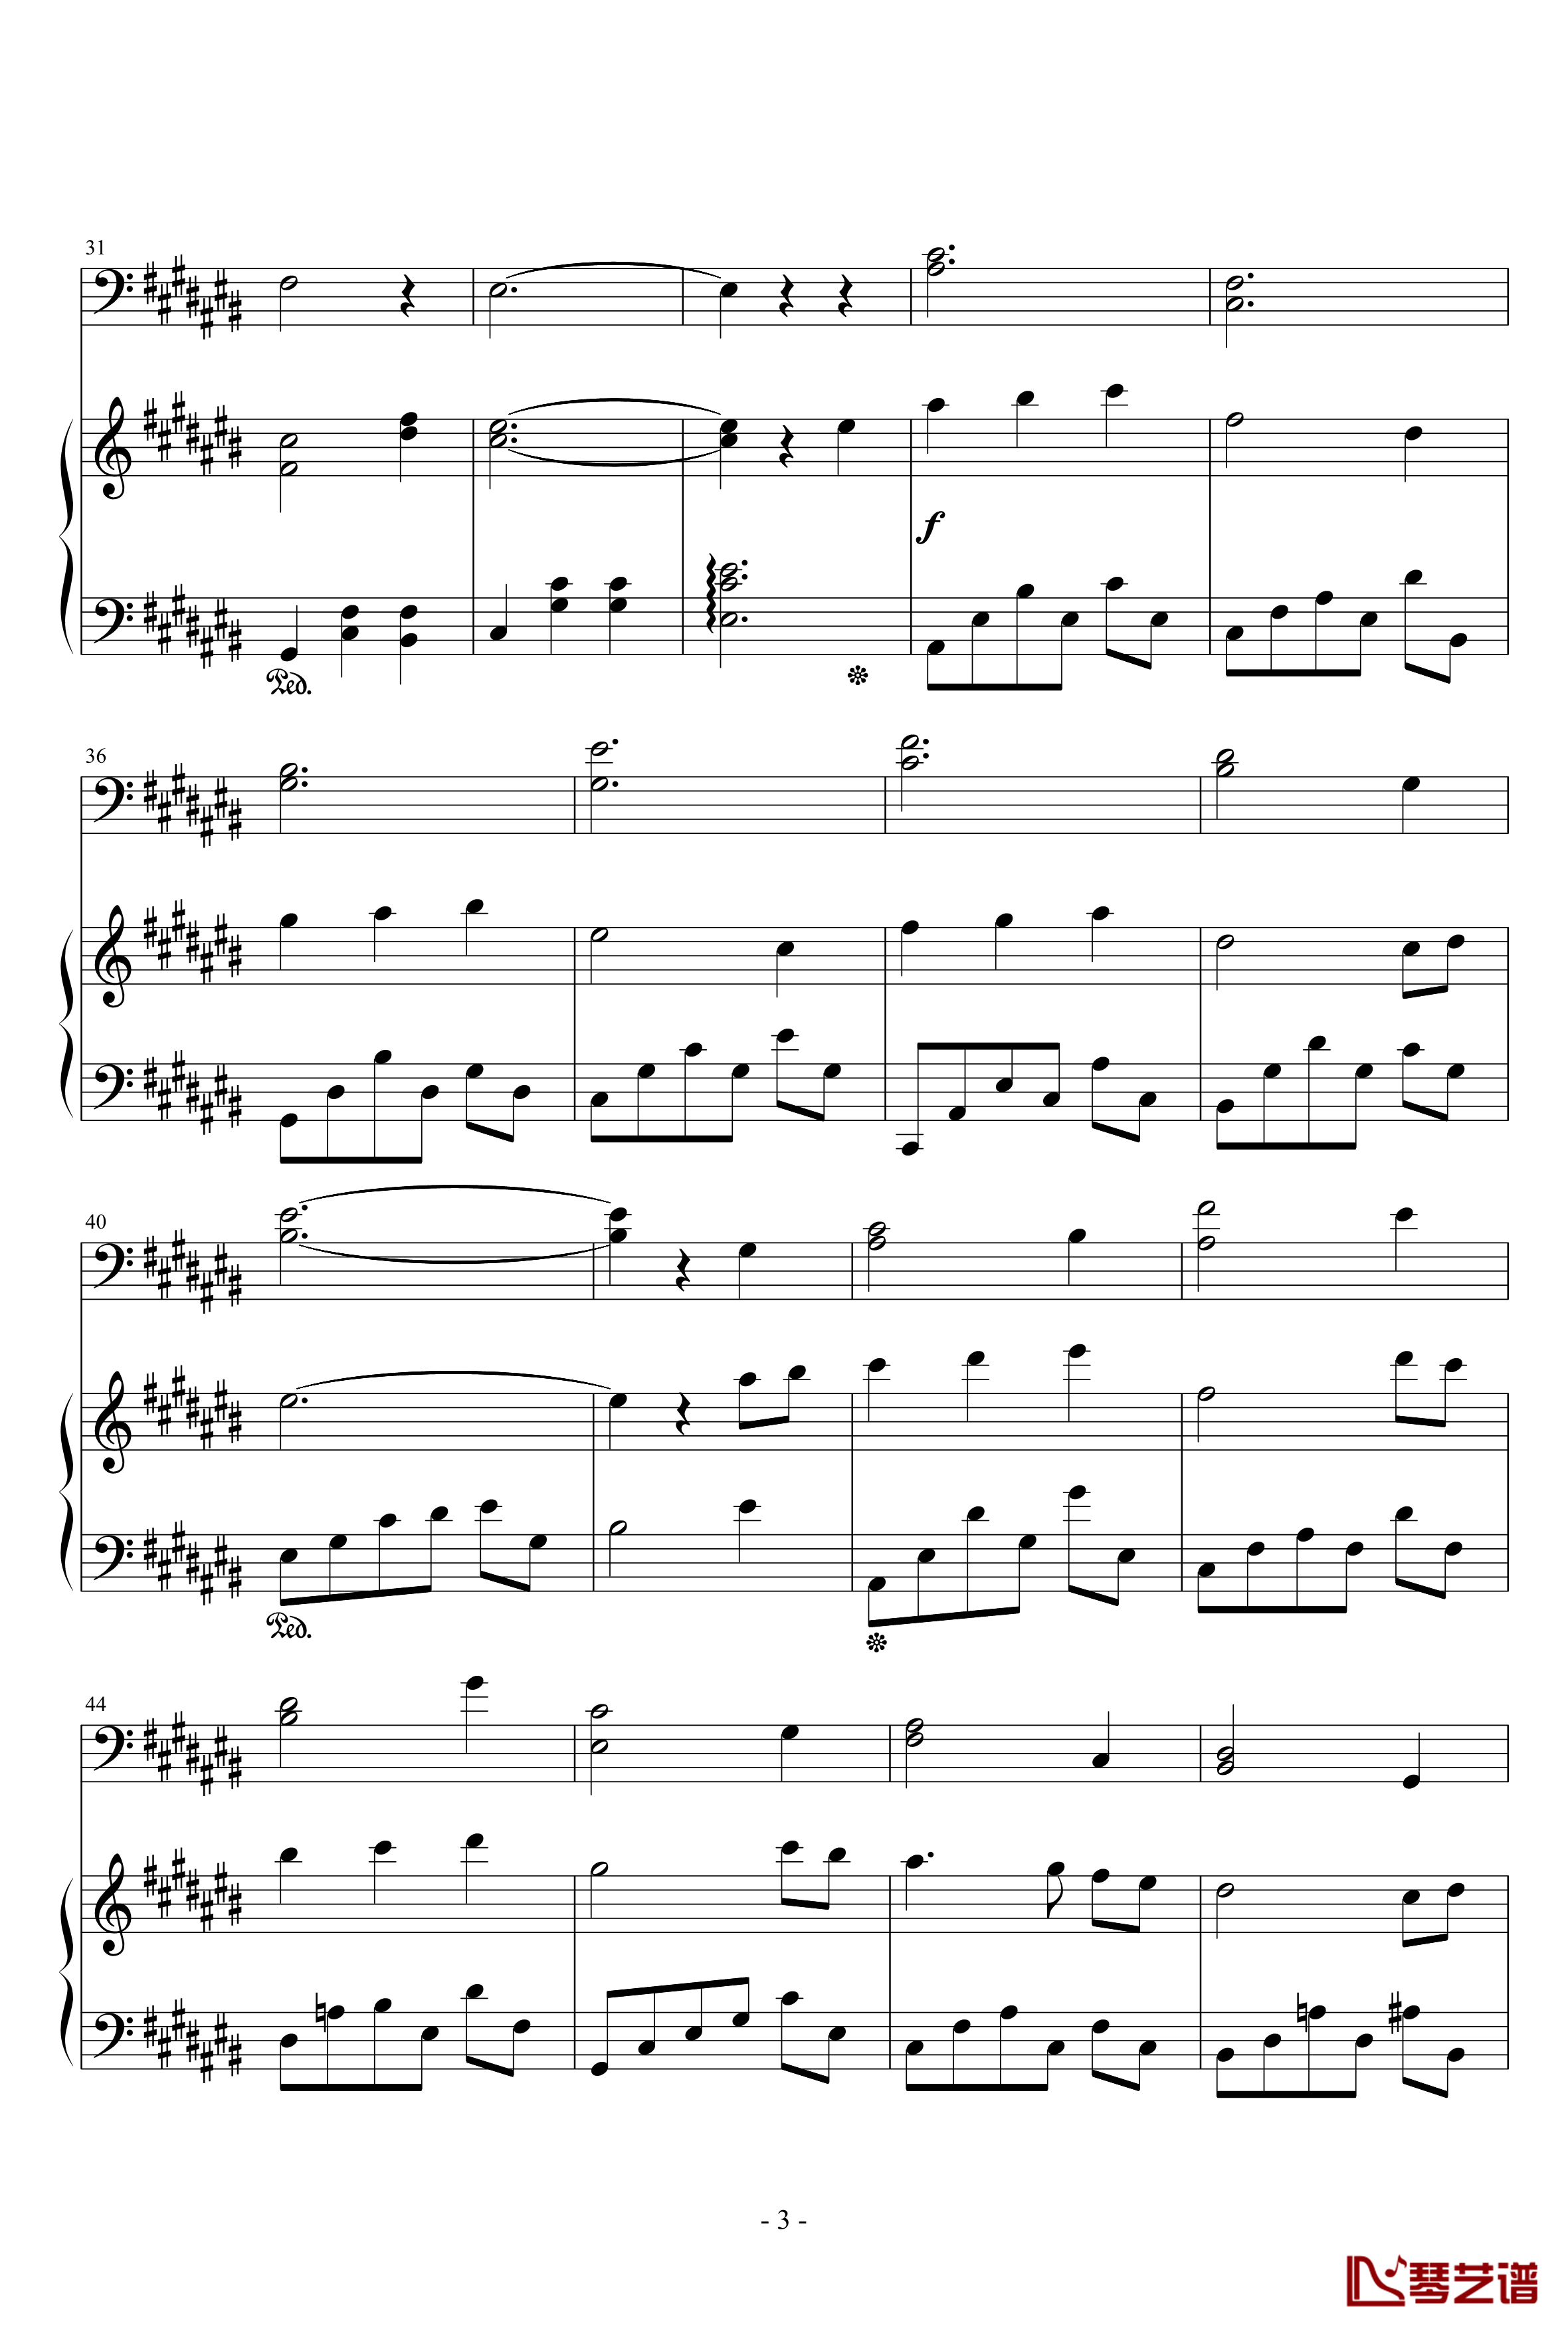 弦乐协奏曲A钢琴谱-天籁传声3